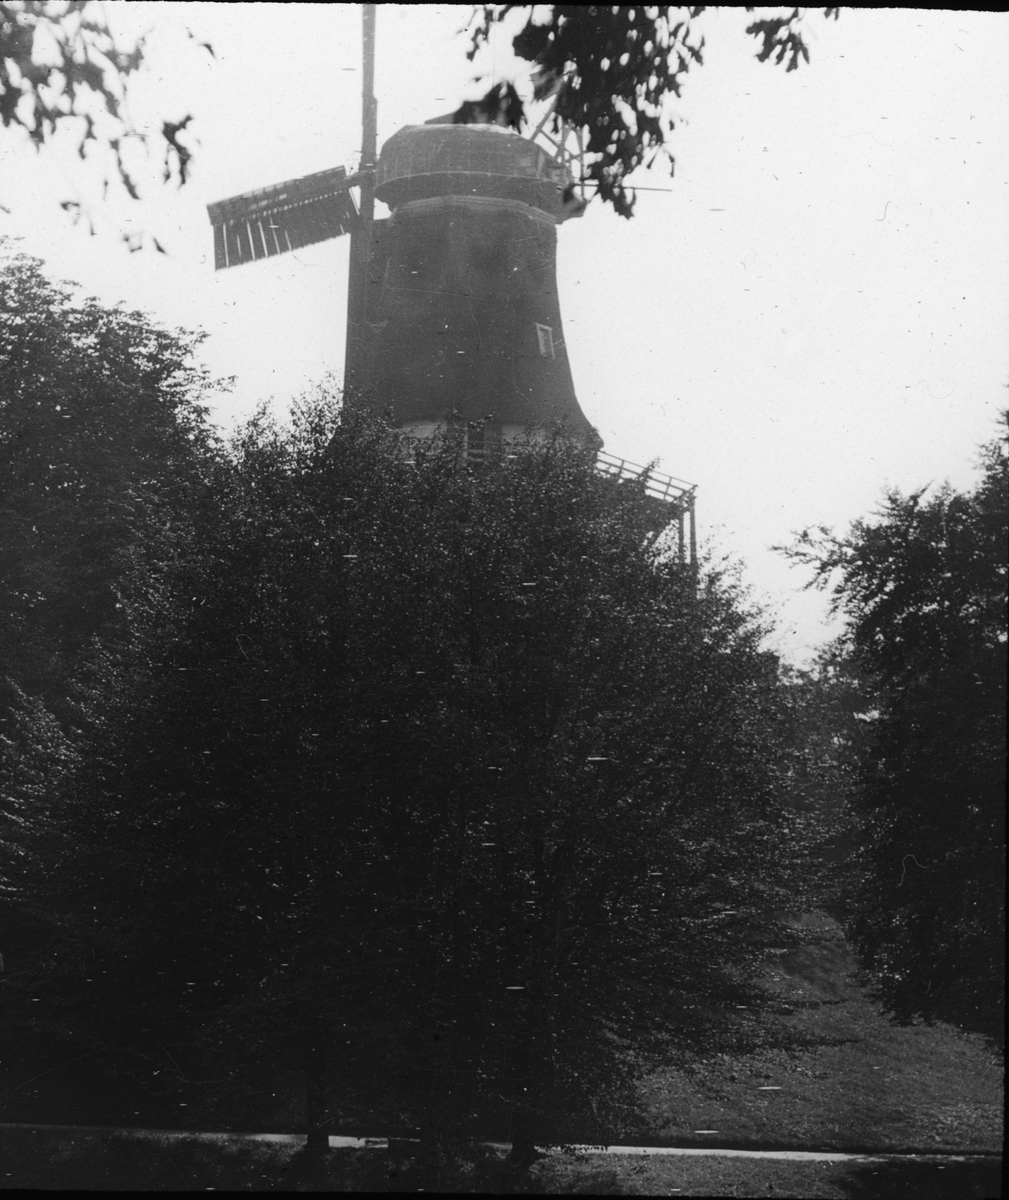 Skioptikonbild med motiv av väderkvarn i Bremen.
Bilden har förvarats i kartong märkt: Resan 1904. Bremen II.